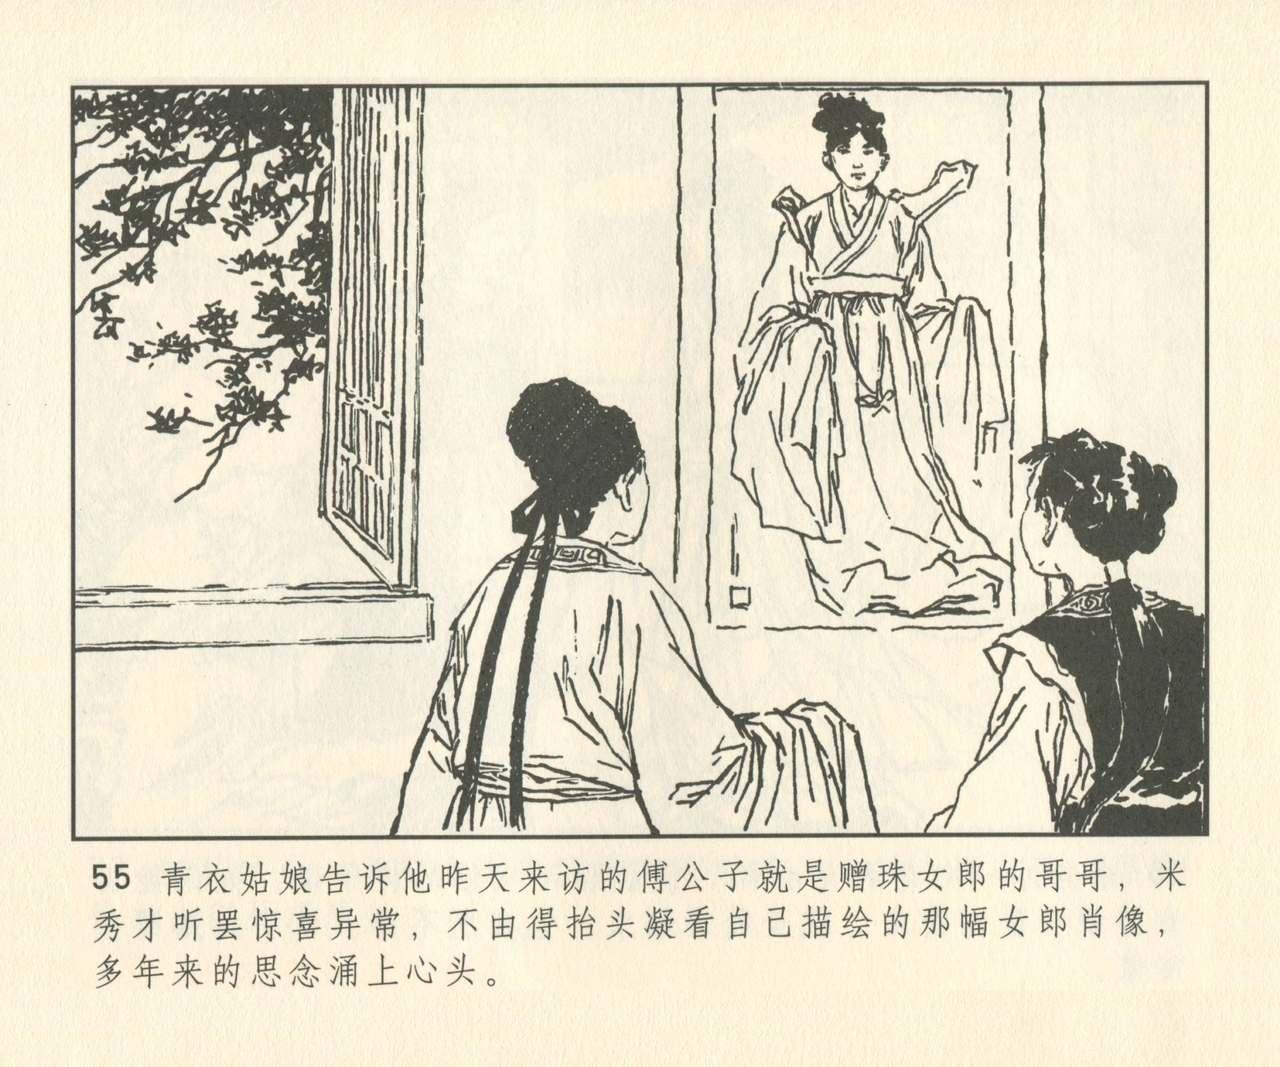 聊斋志异 张玮等绘 天津人民美术出版社 卷二十一 ~ 三十 183